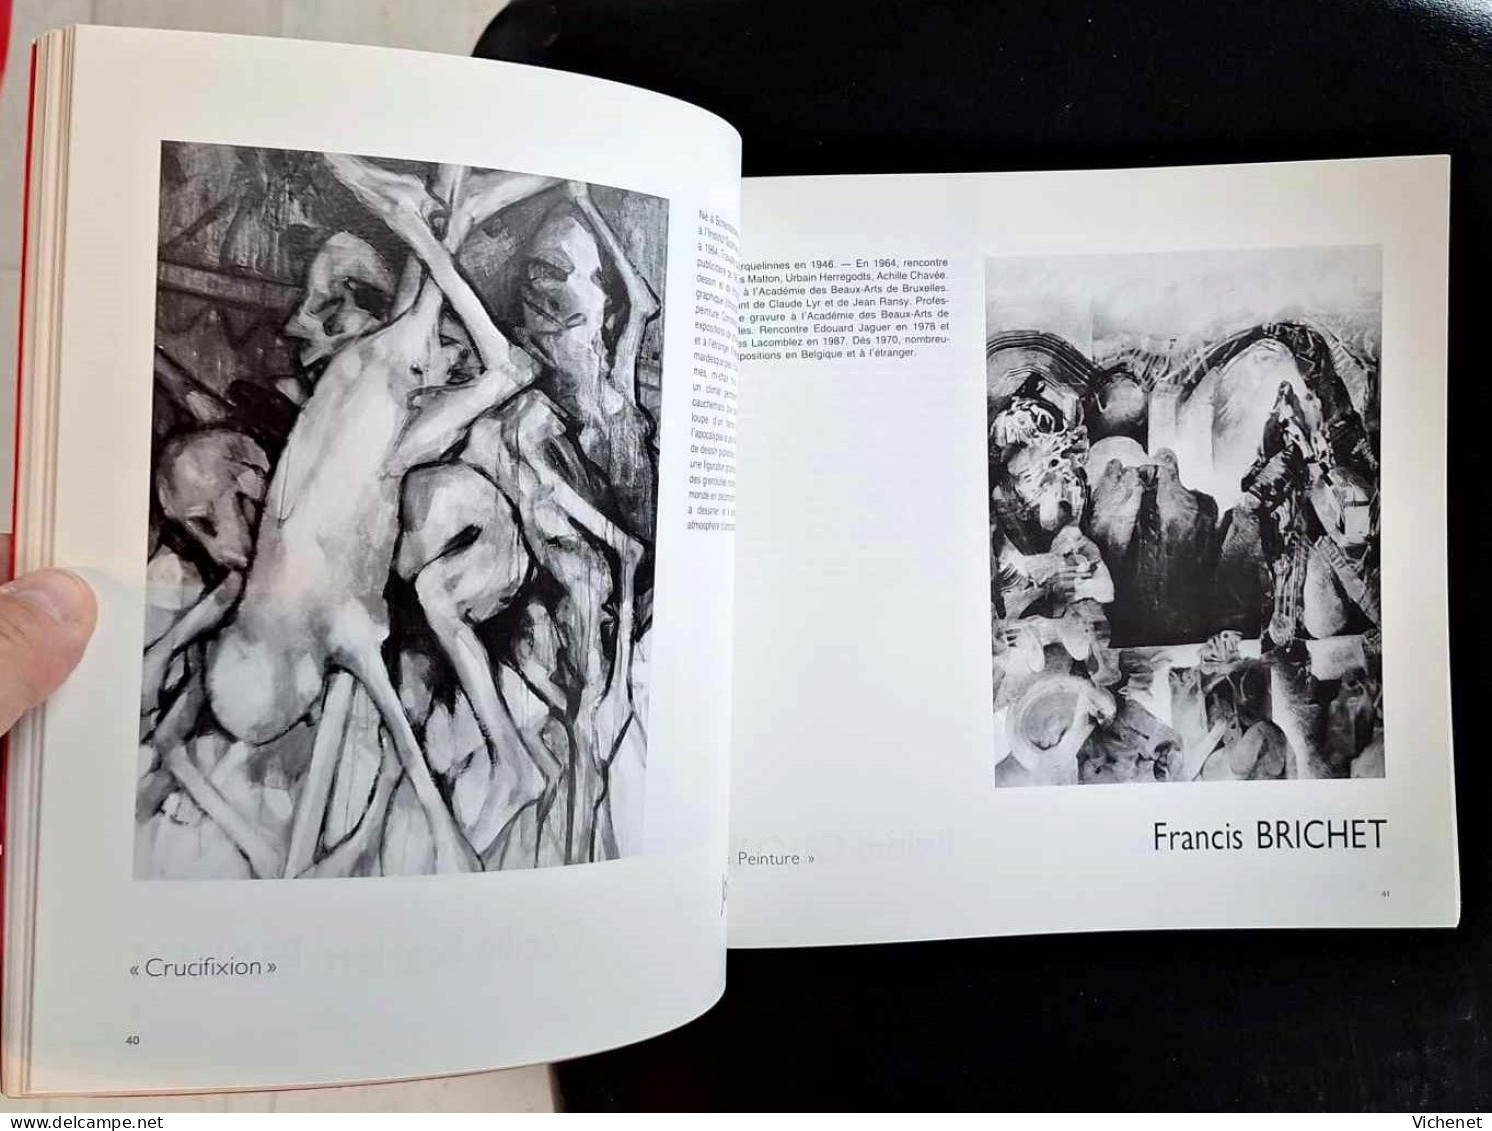 Figuration Critique - Catalogue D'Exposition - Mons, 1992 - Kunst